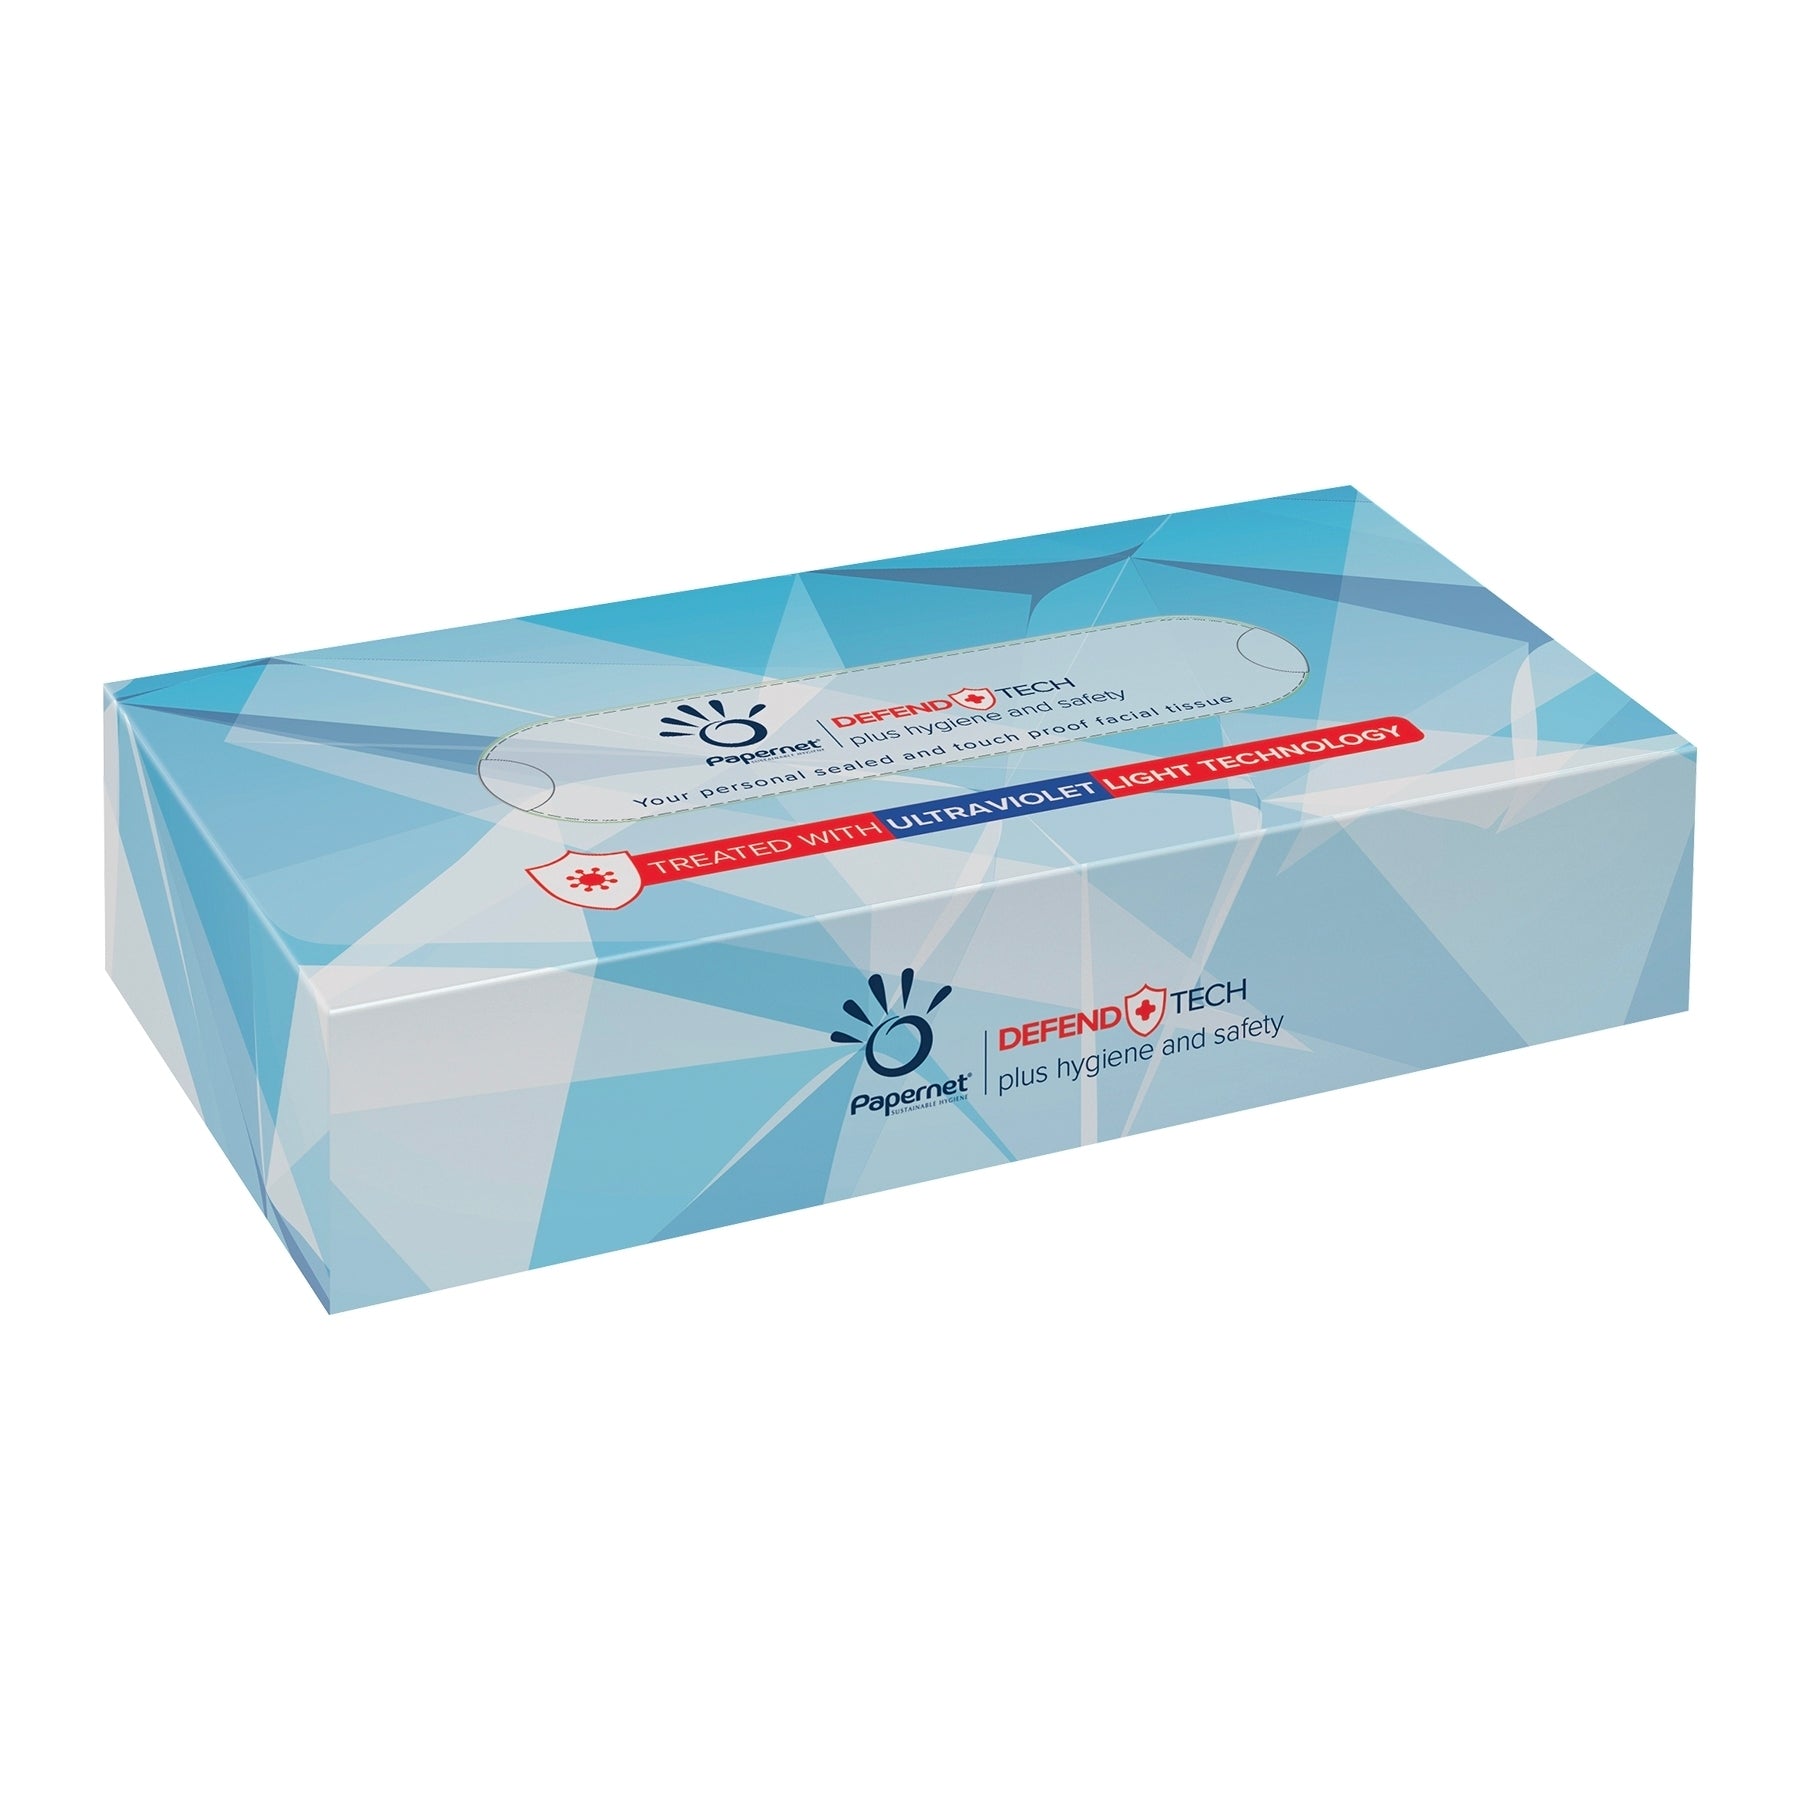 Eine rechteckige Kartonschachtel mit Papernet Kosmetiktüchern 415938 mit DefendTech-Technologie, hervorgehoben durch ein silbernes und blaues geometrisches Muster und Logos, die auf antivirale Eigenschaften hinweisen.